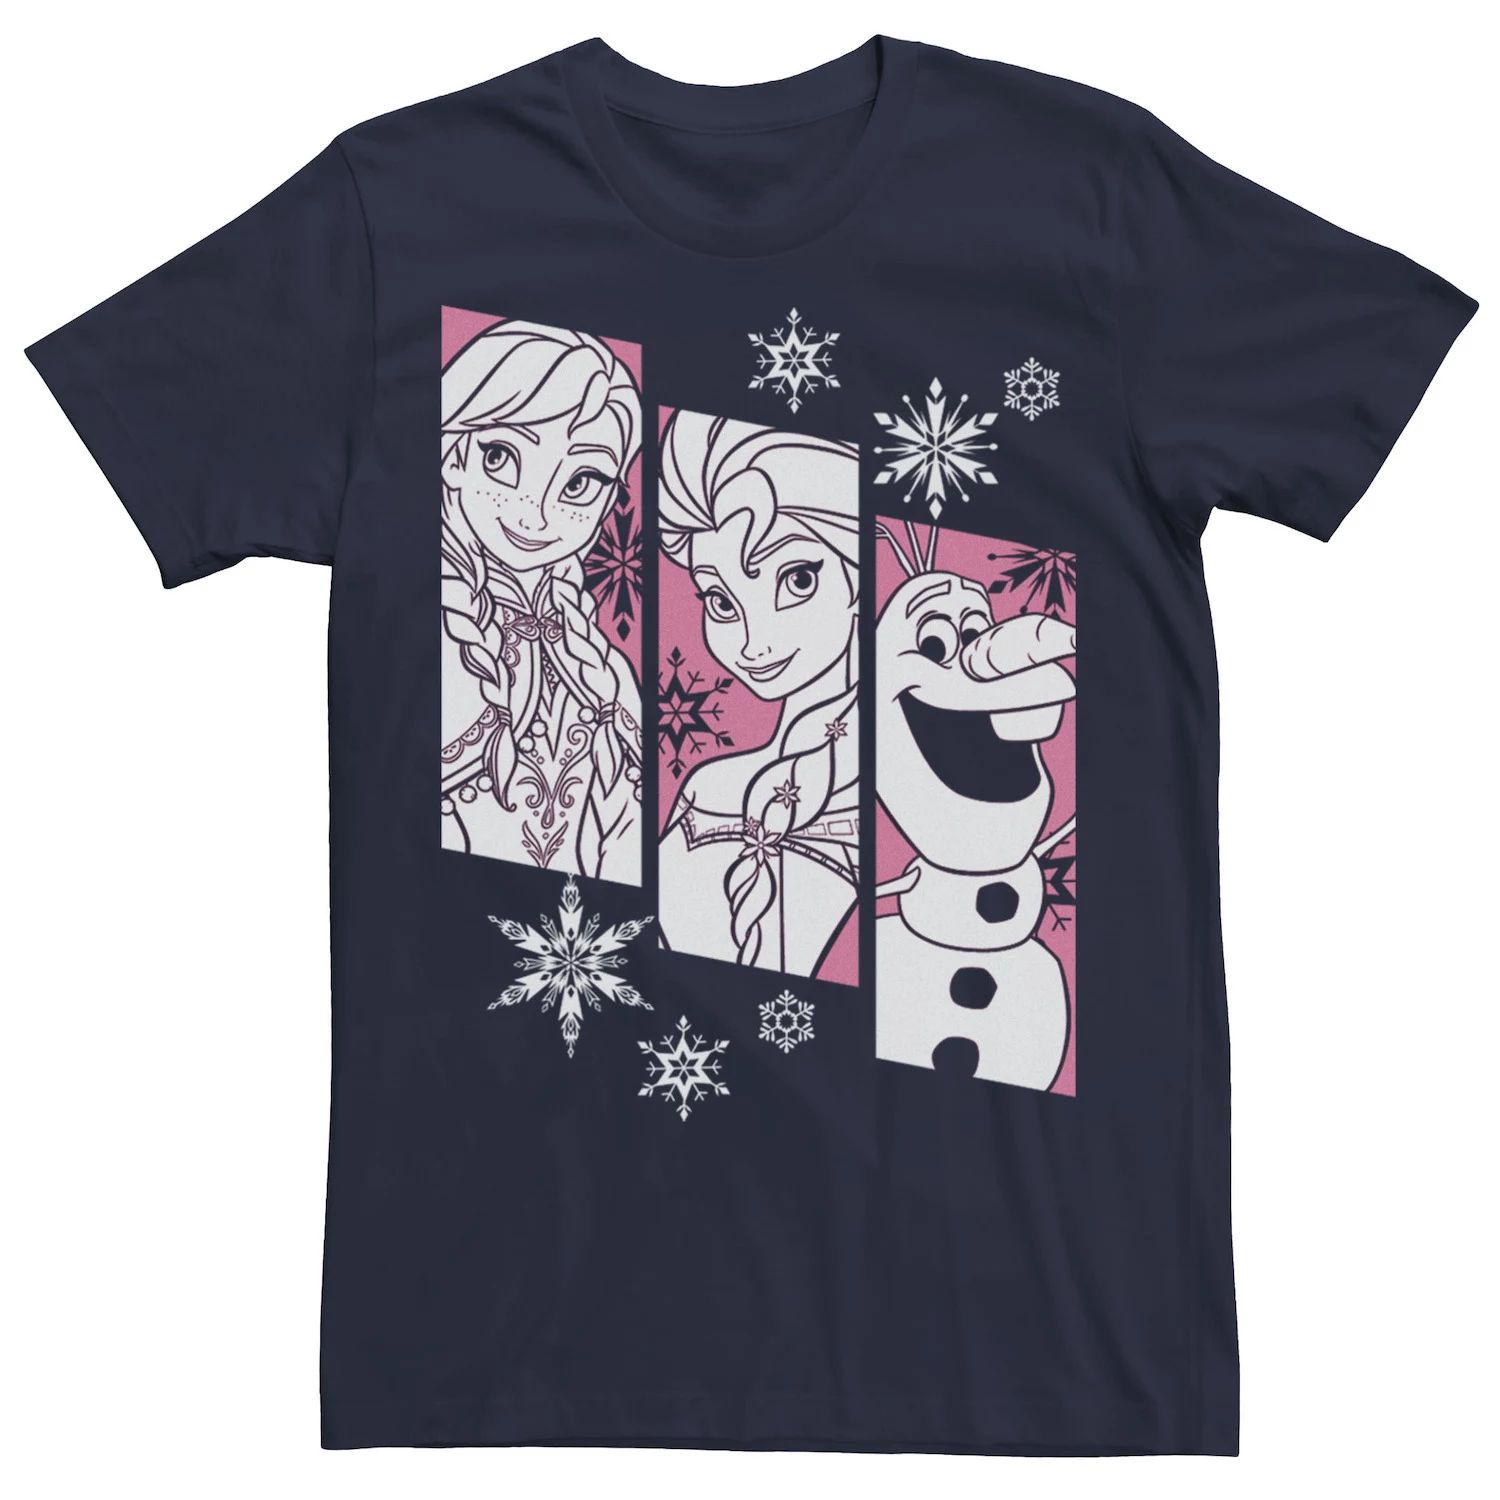 Мужская футболка Frozen Anna Elsa Olaf со снежинками Disney